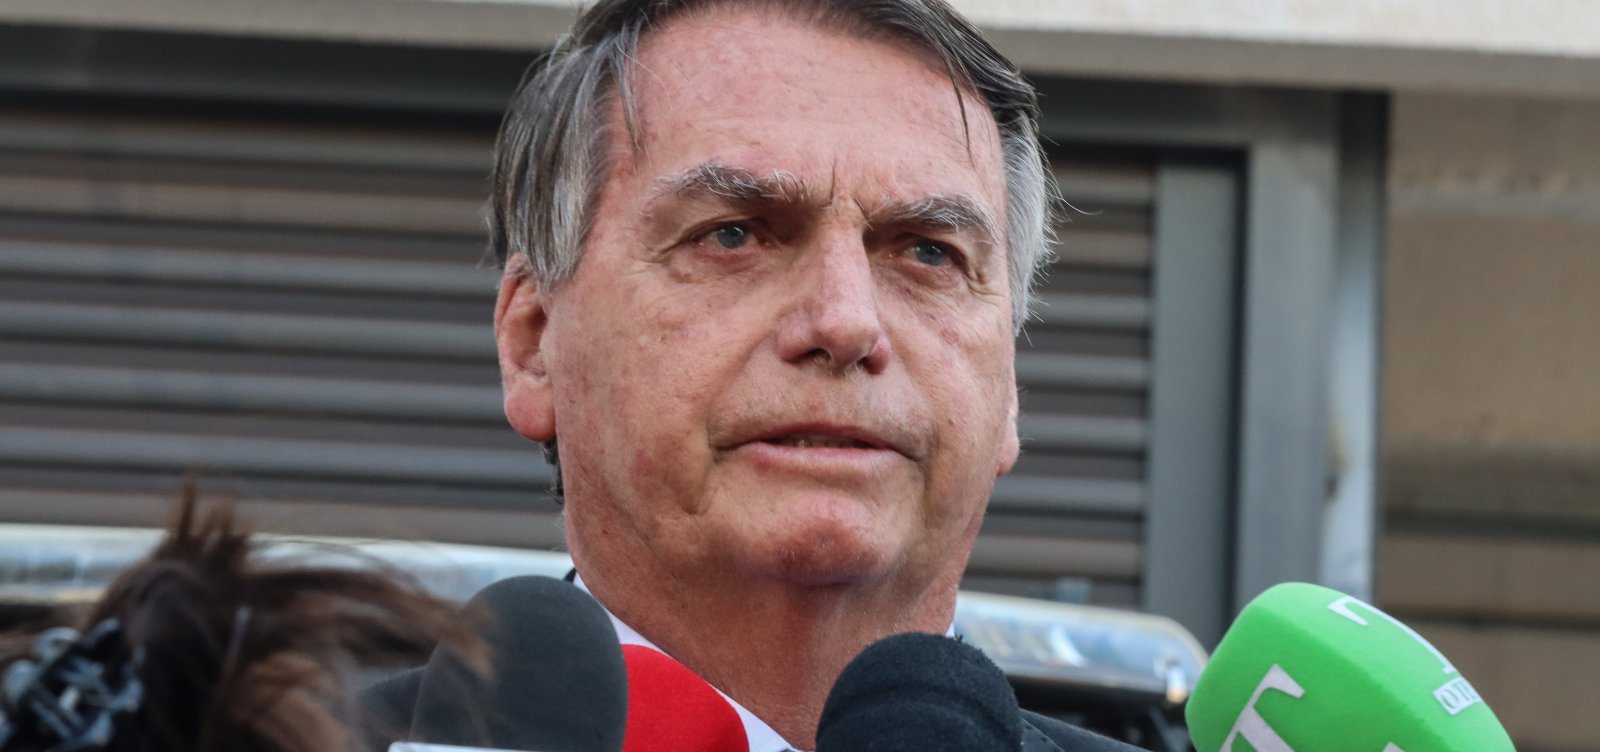 Bolsonaro solicita retorno de passaporte ao STF para visitar Israel em maio 